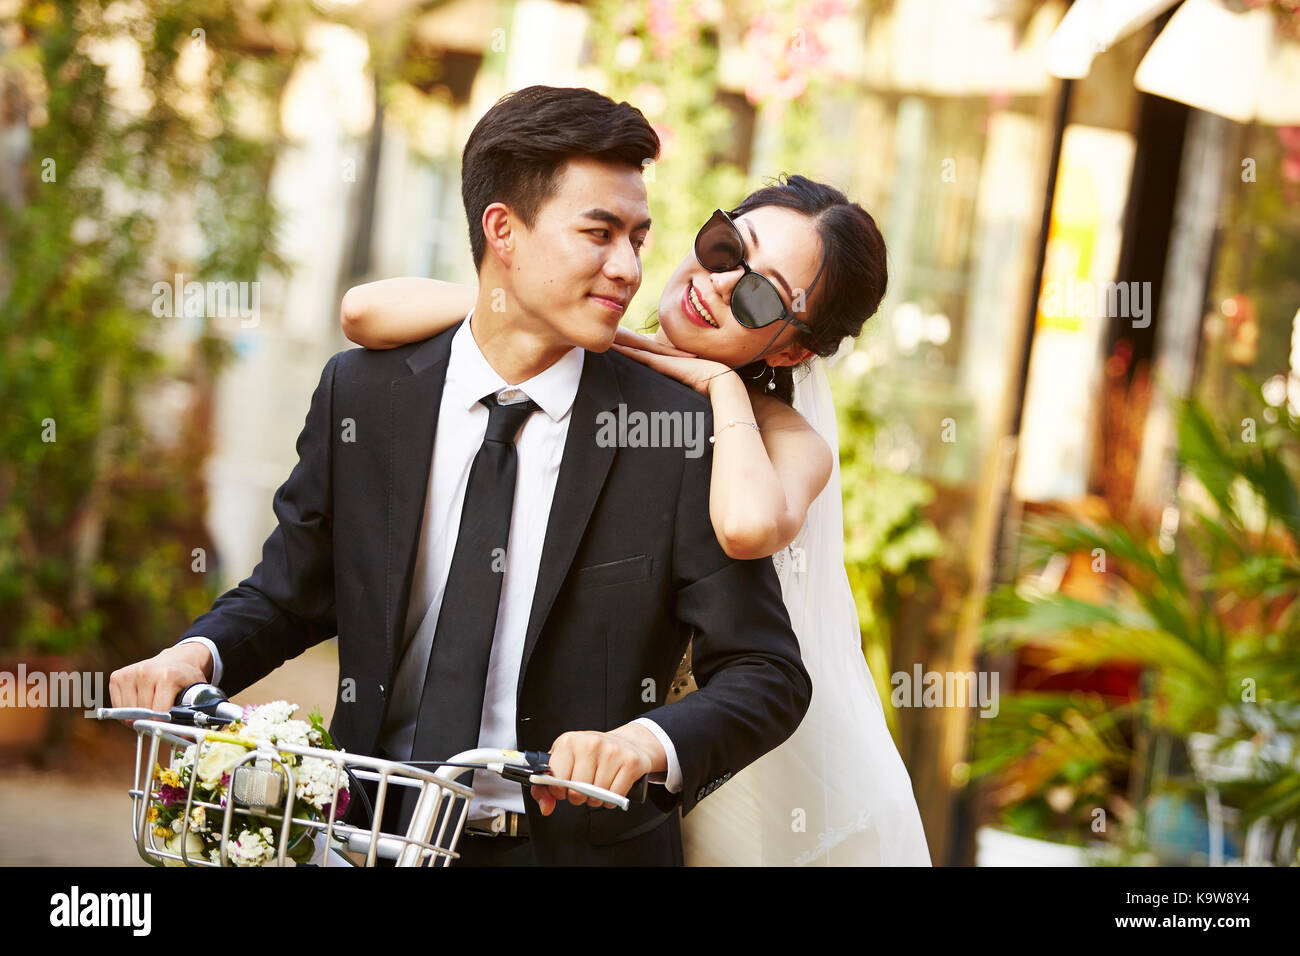 Happy sposi asian giovane divertirsi in sella ad una bicicletta. Foto Stock